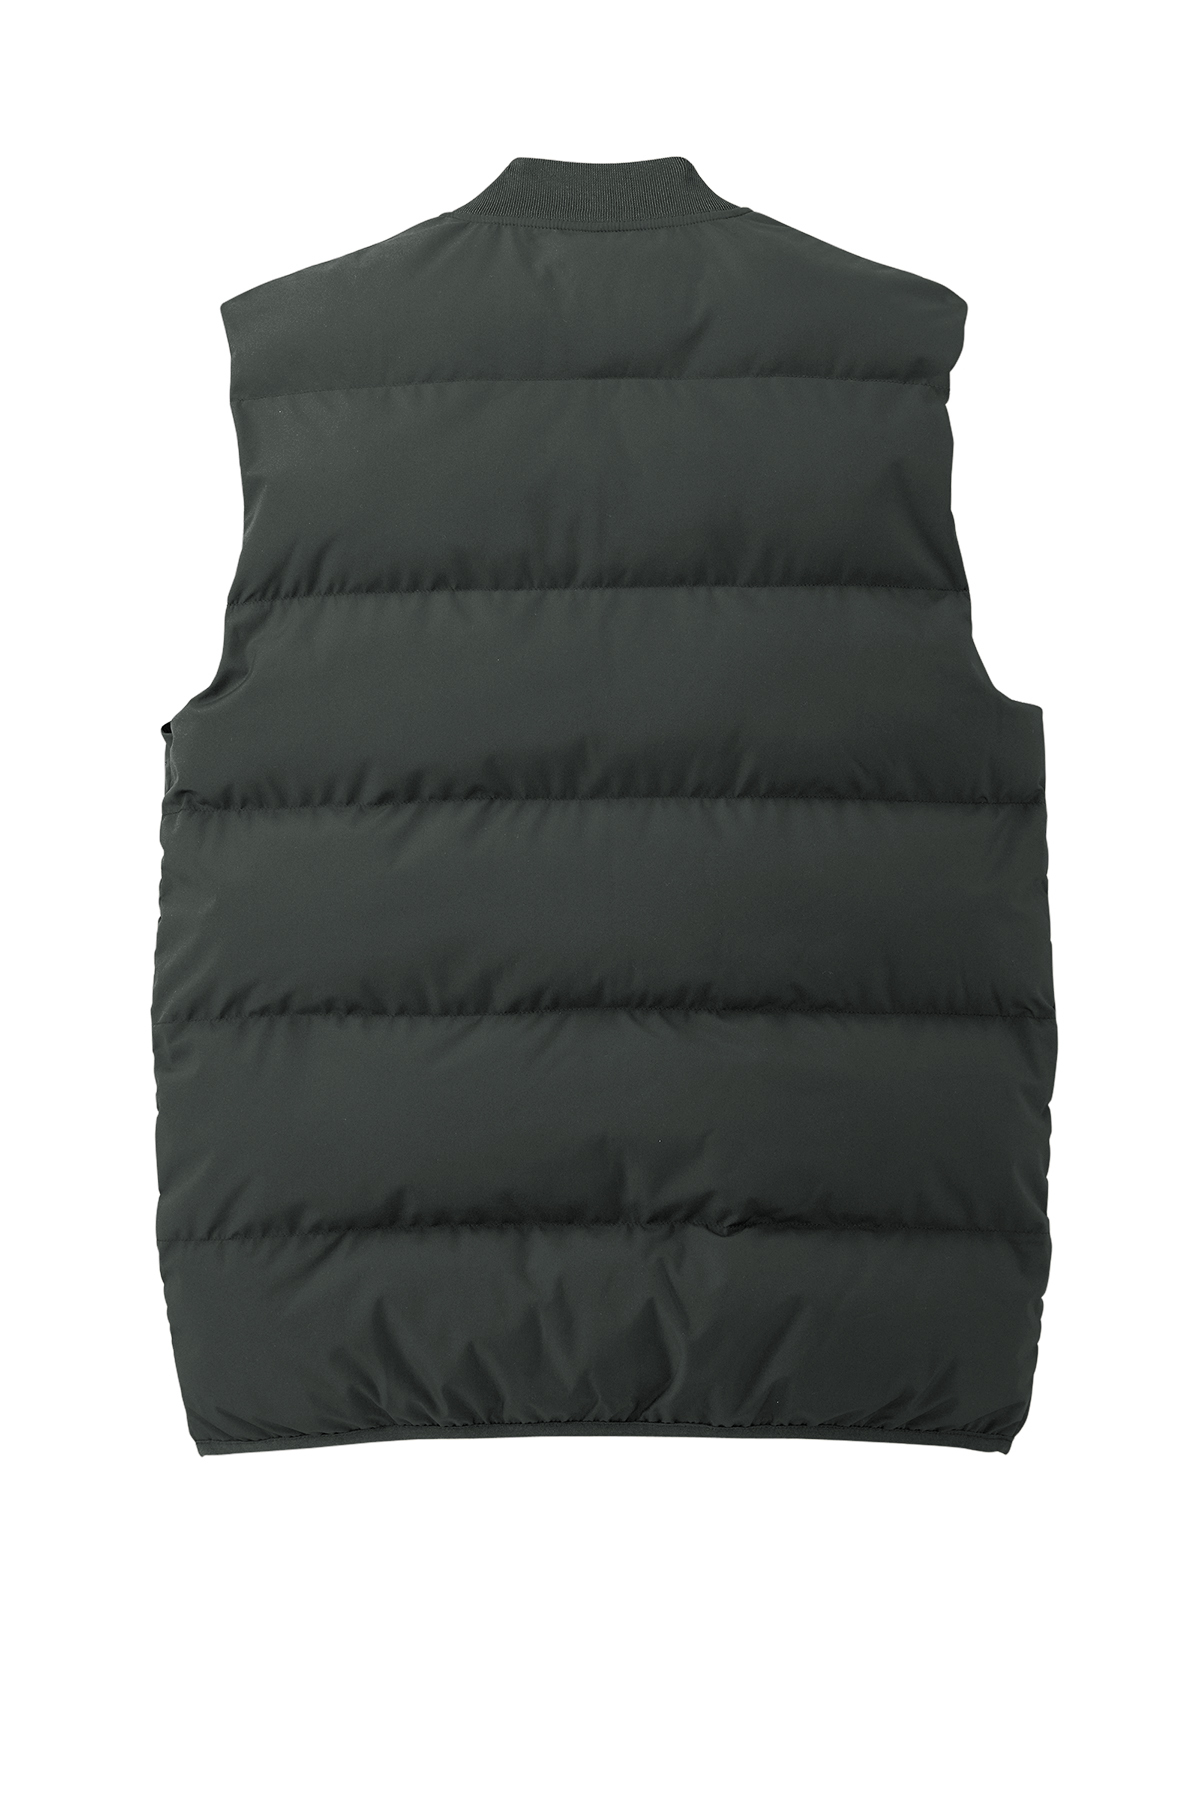 Mercer+Mettle Puffy Vest | Product | SanMar